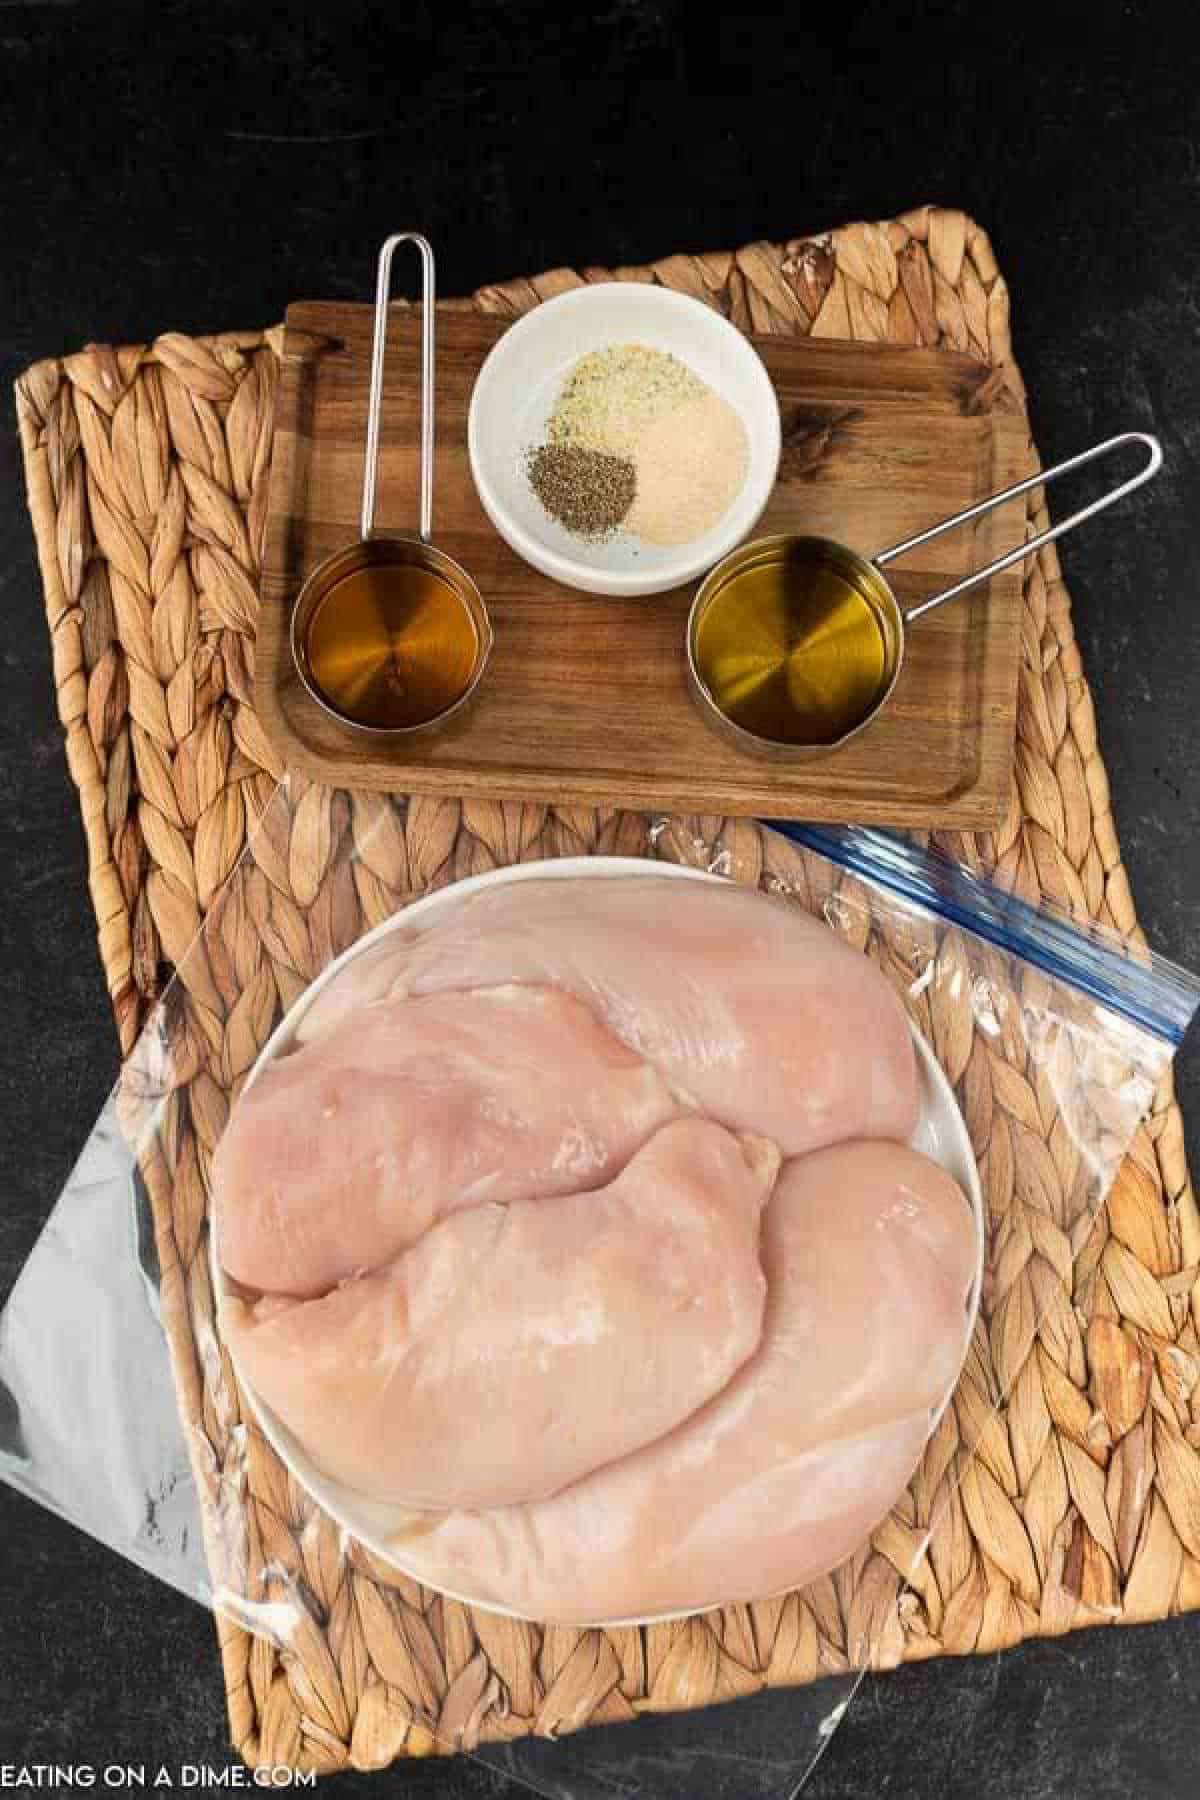 Ingredients to make the best grilled chicken marinade: chicken breasts, apple cider vinegar, olive oil, garlic salt, onion powder and pepper. 